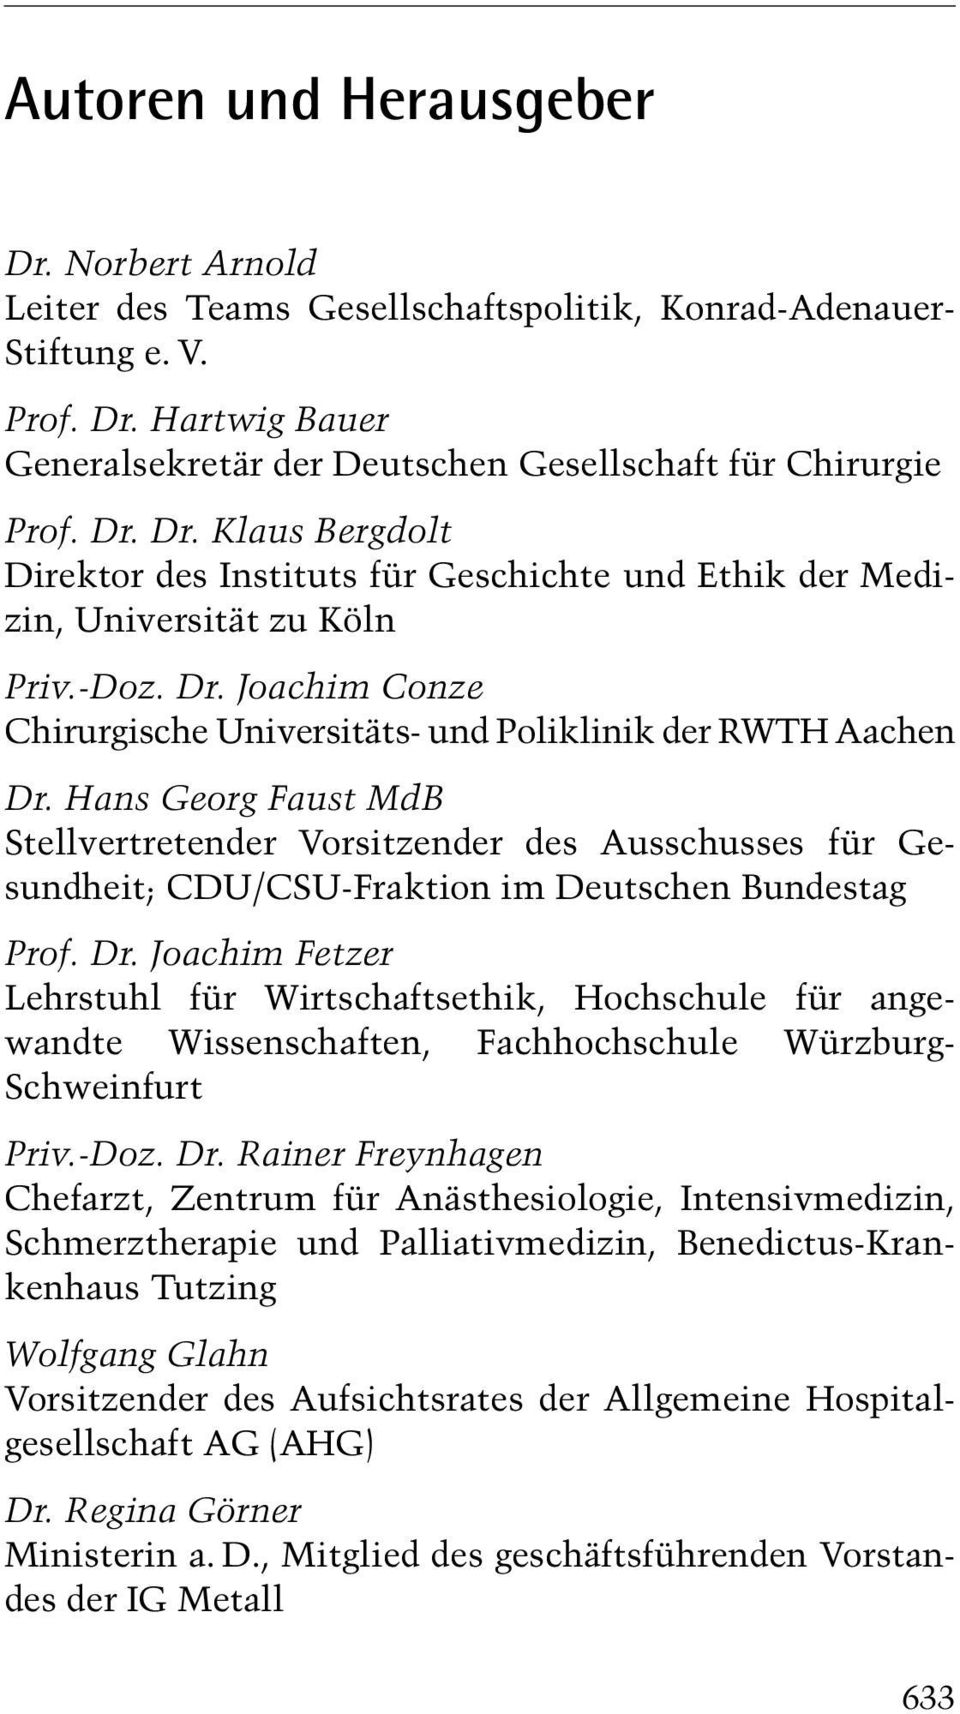 Hans Georg Faust MdB Stellvertretender Vorsitzender des Ausschusses für Gesundheit; CDU/CSU-Fraktion im Deutschen Bundestag Prof. Dr.